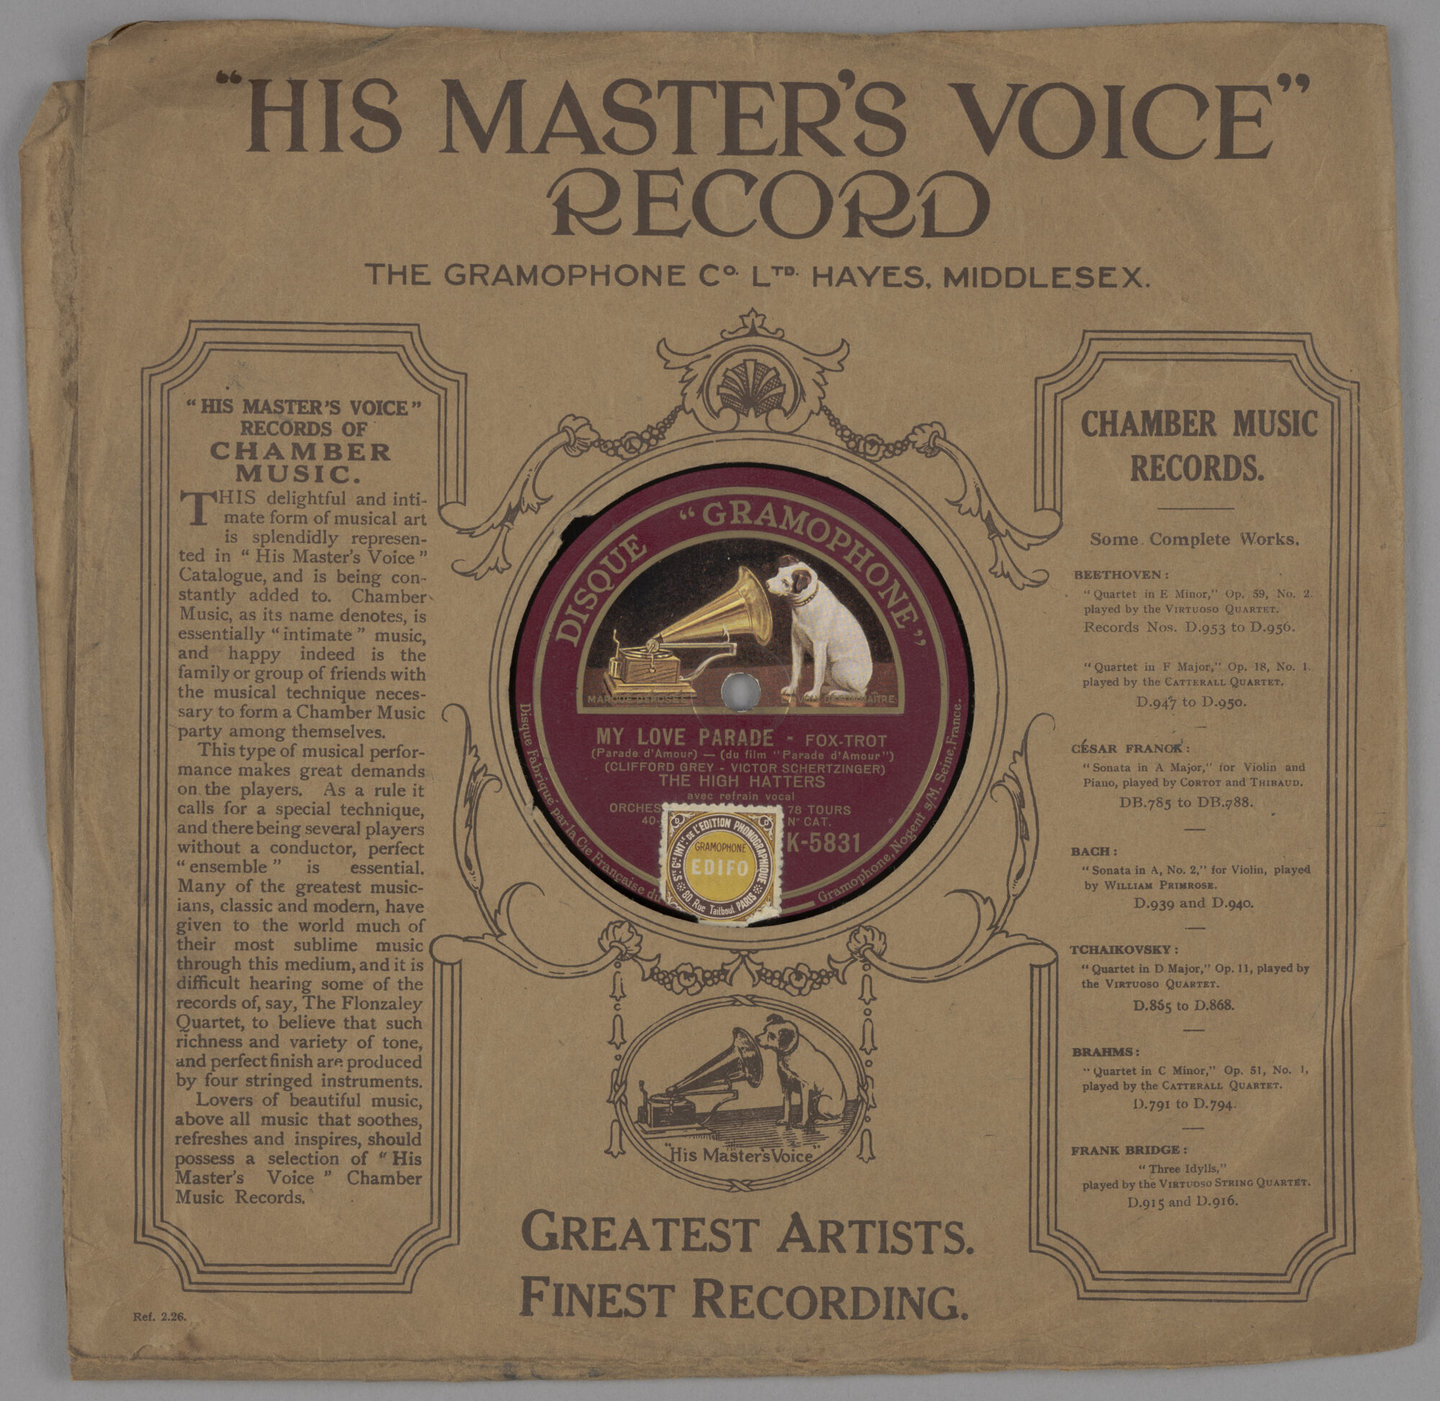 Grammofoonplaat 78 toeren van het merk His Master's Voice